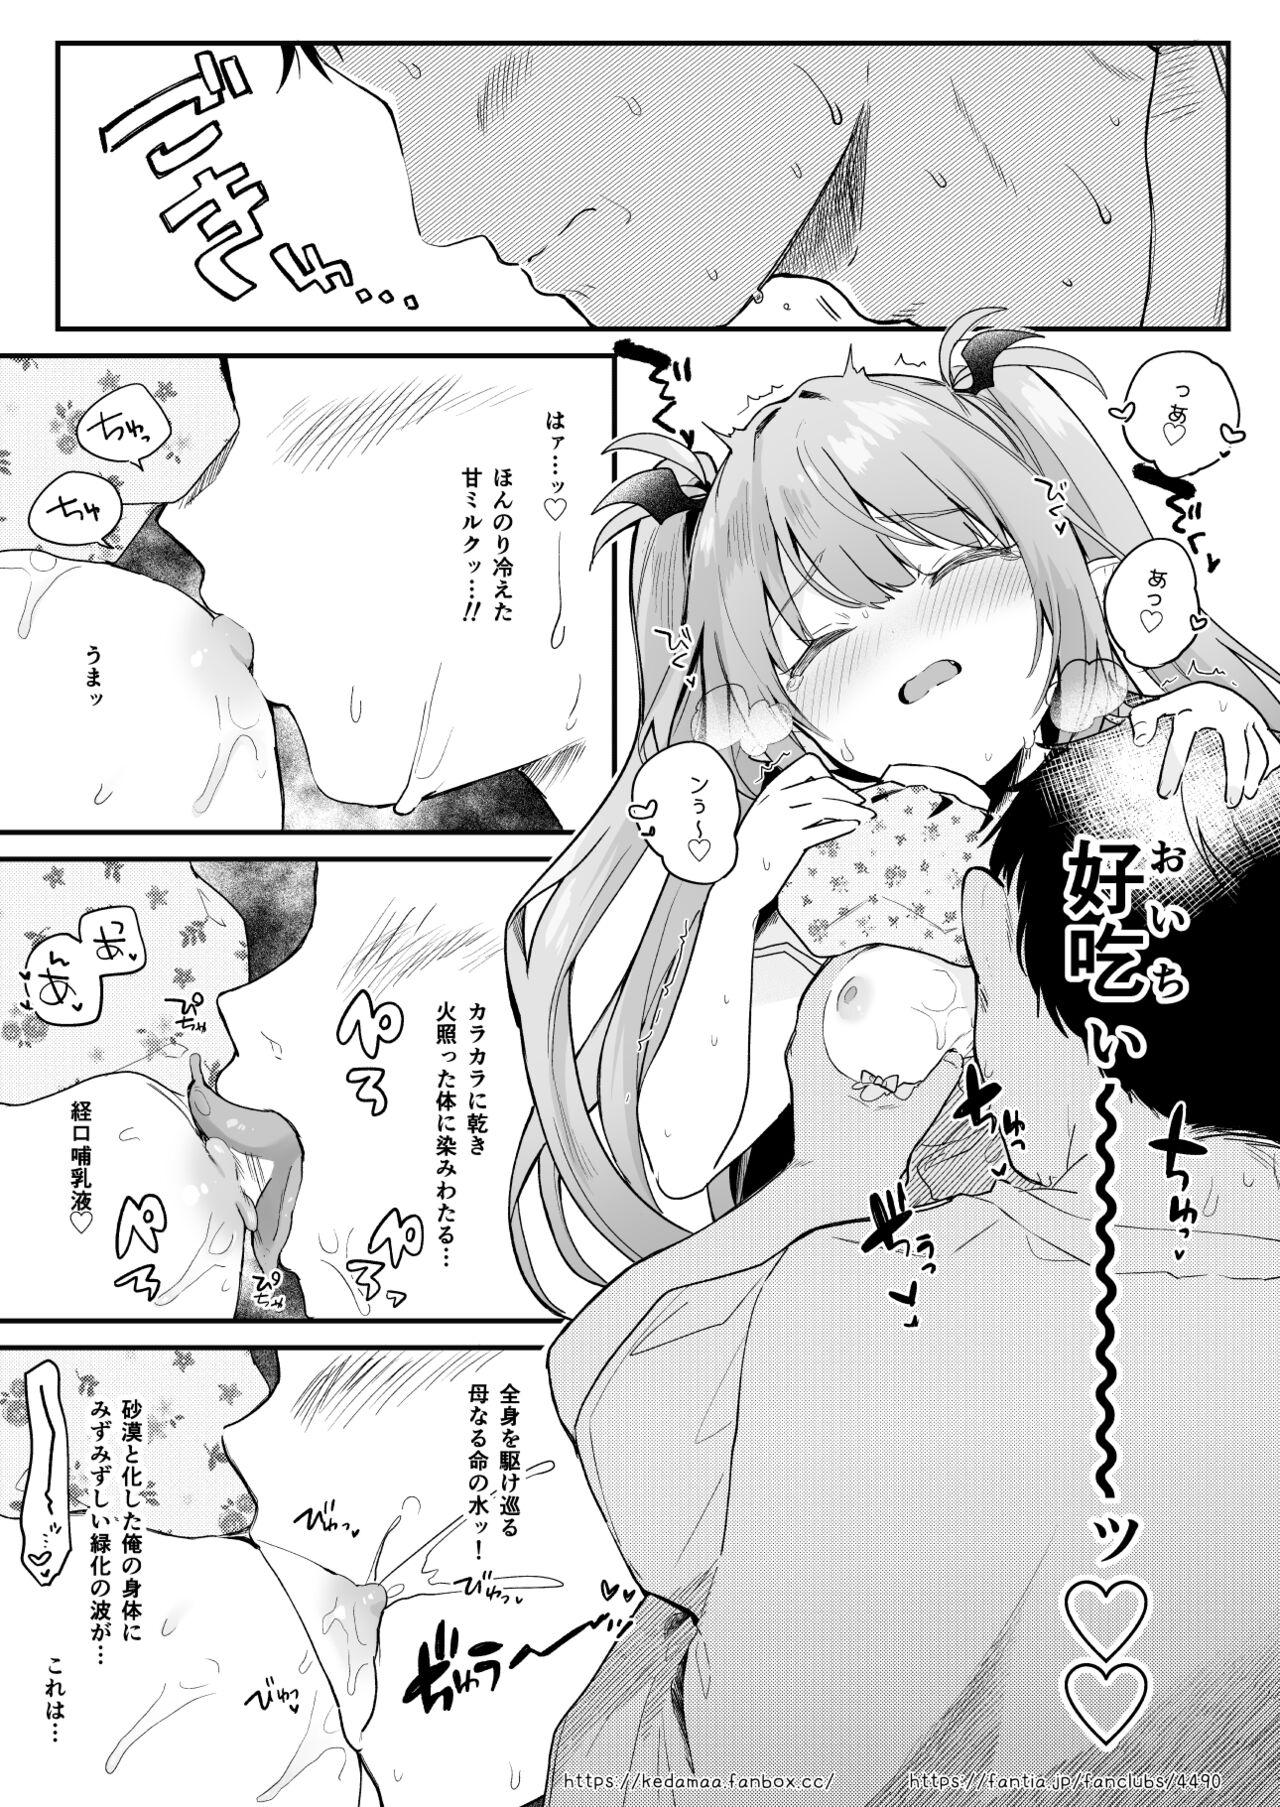 Air Con Kowareta Hi Rurumu-san to Asedaku Sex suru Manga 8